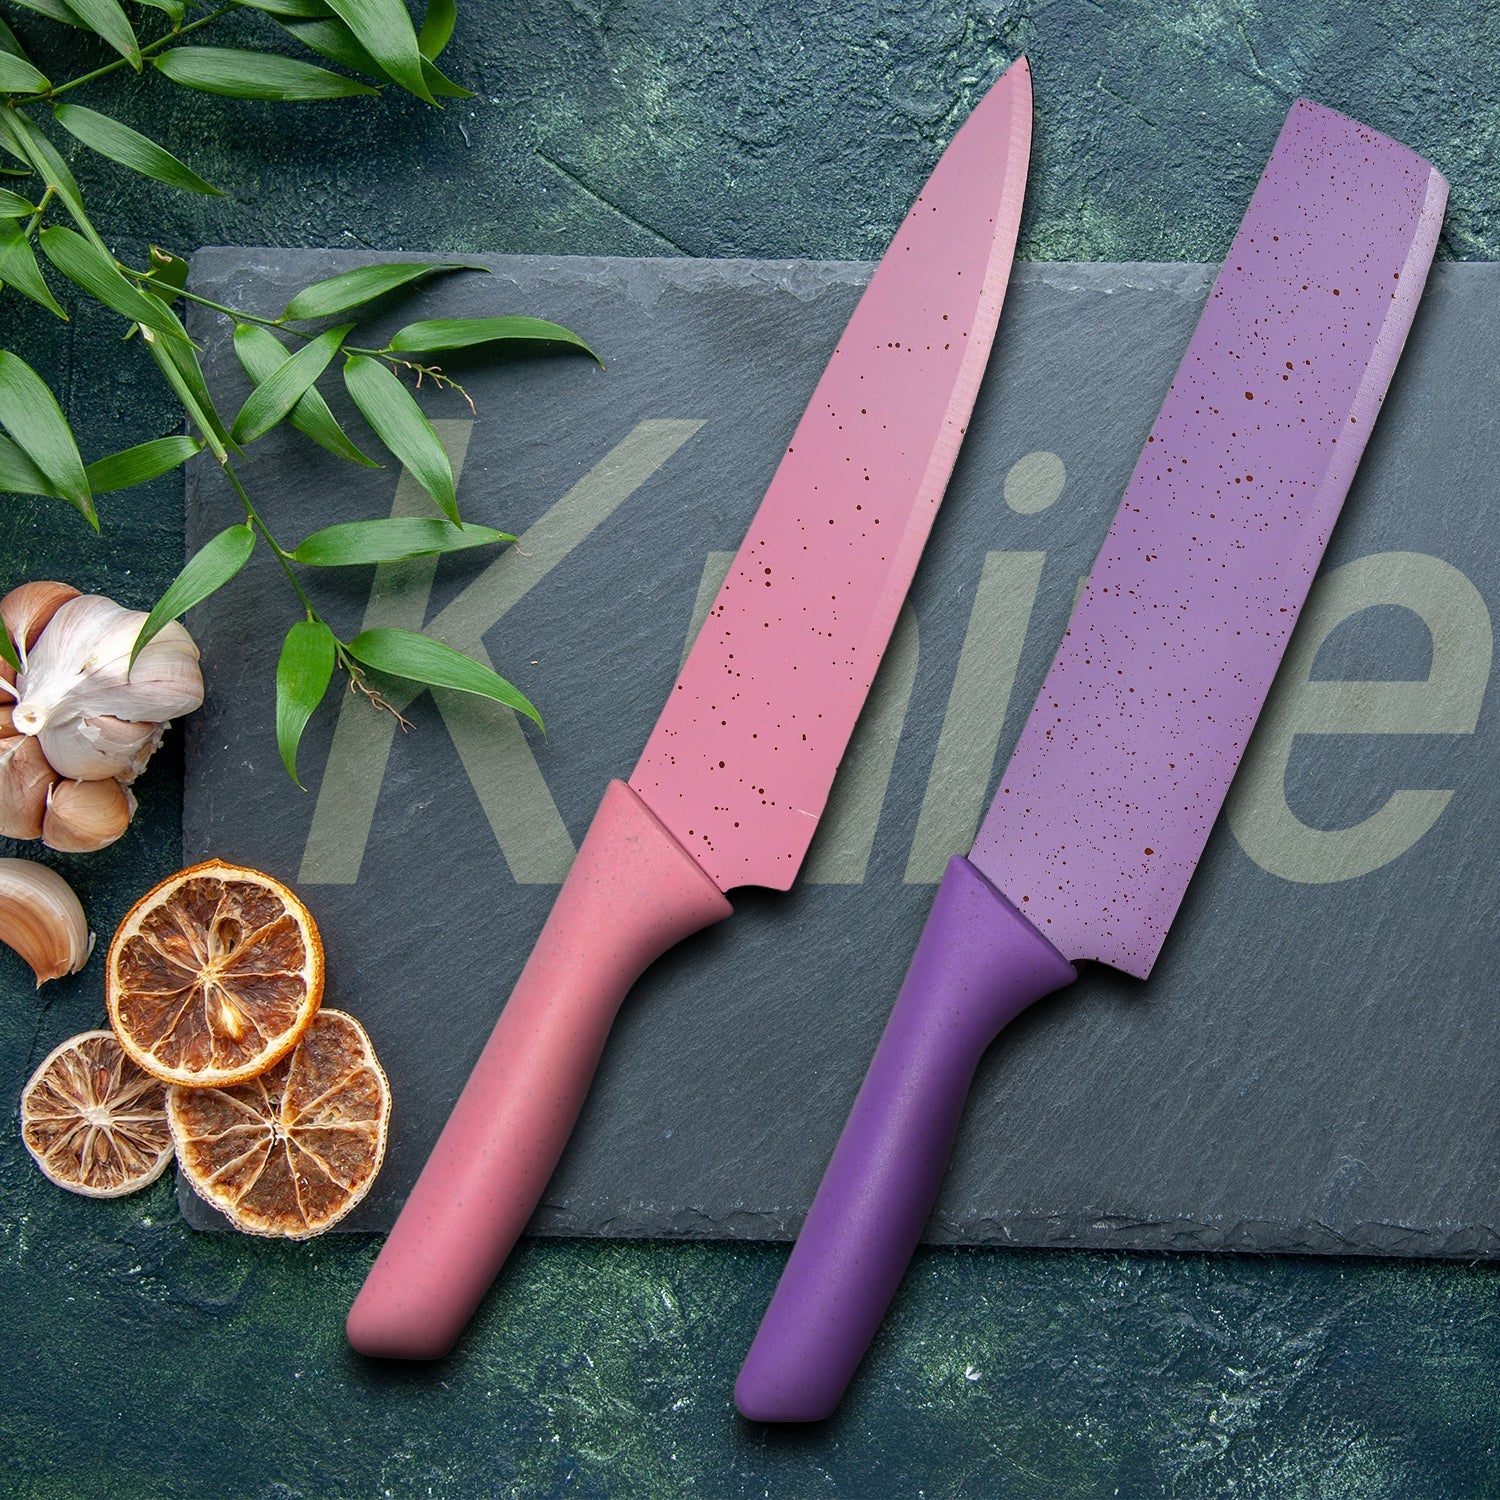 2948 Corrugated 6Pc Kitchen Knife Set Professional Box Knife Set 6 Piece Forged Kitchen Knives with Box. DeoDap